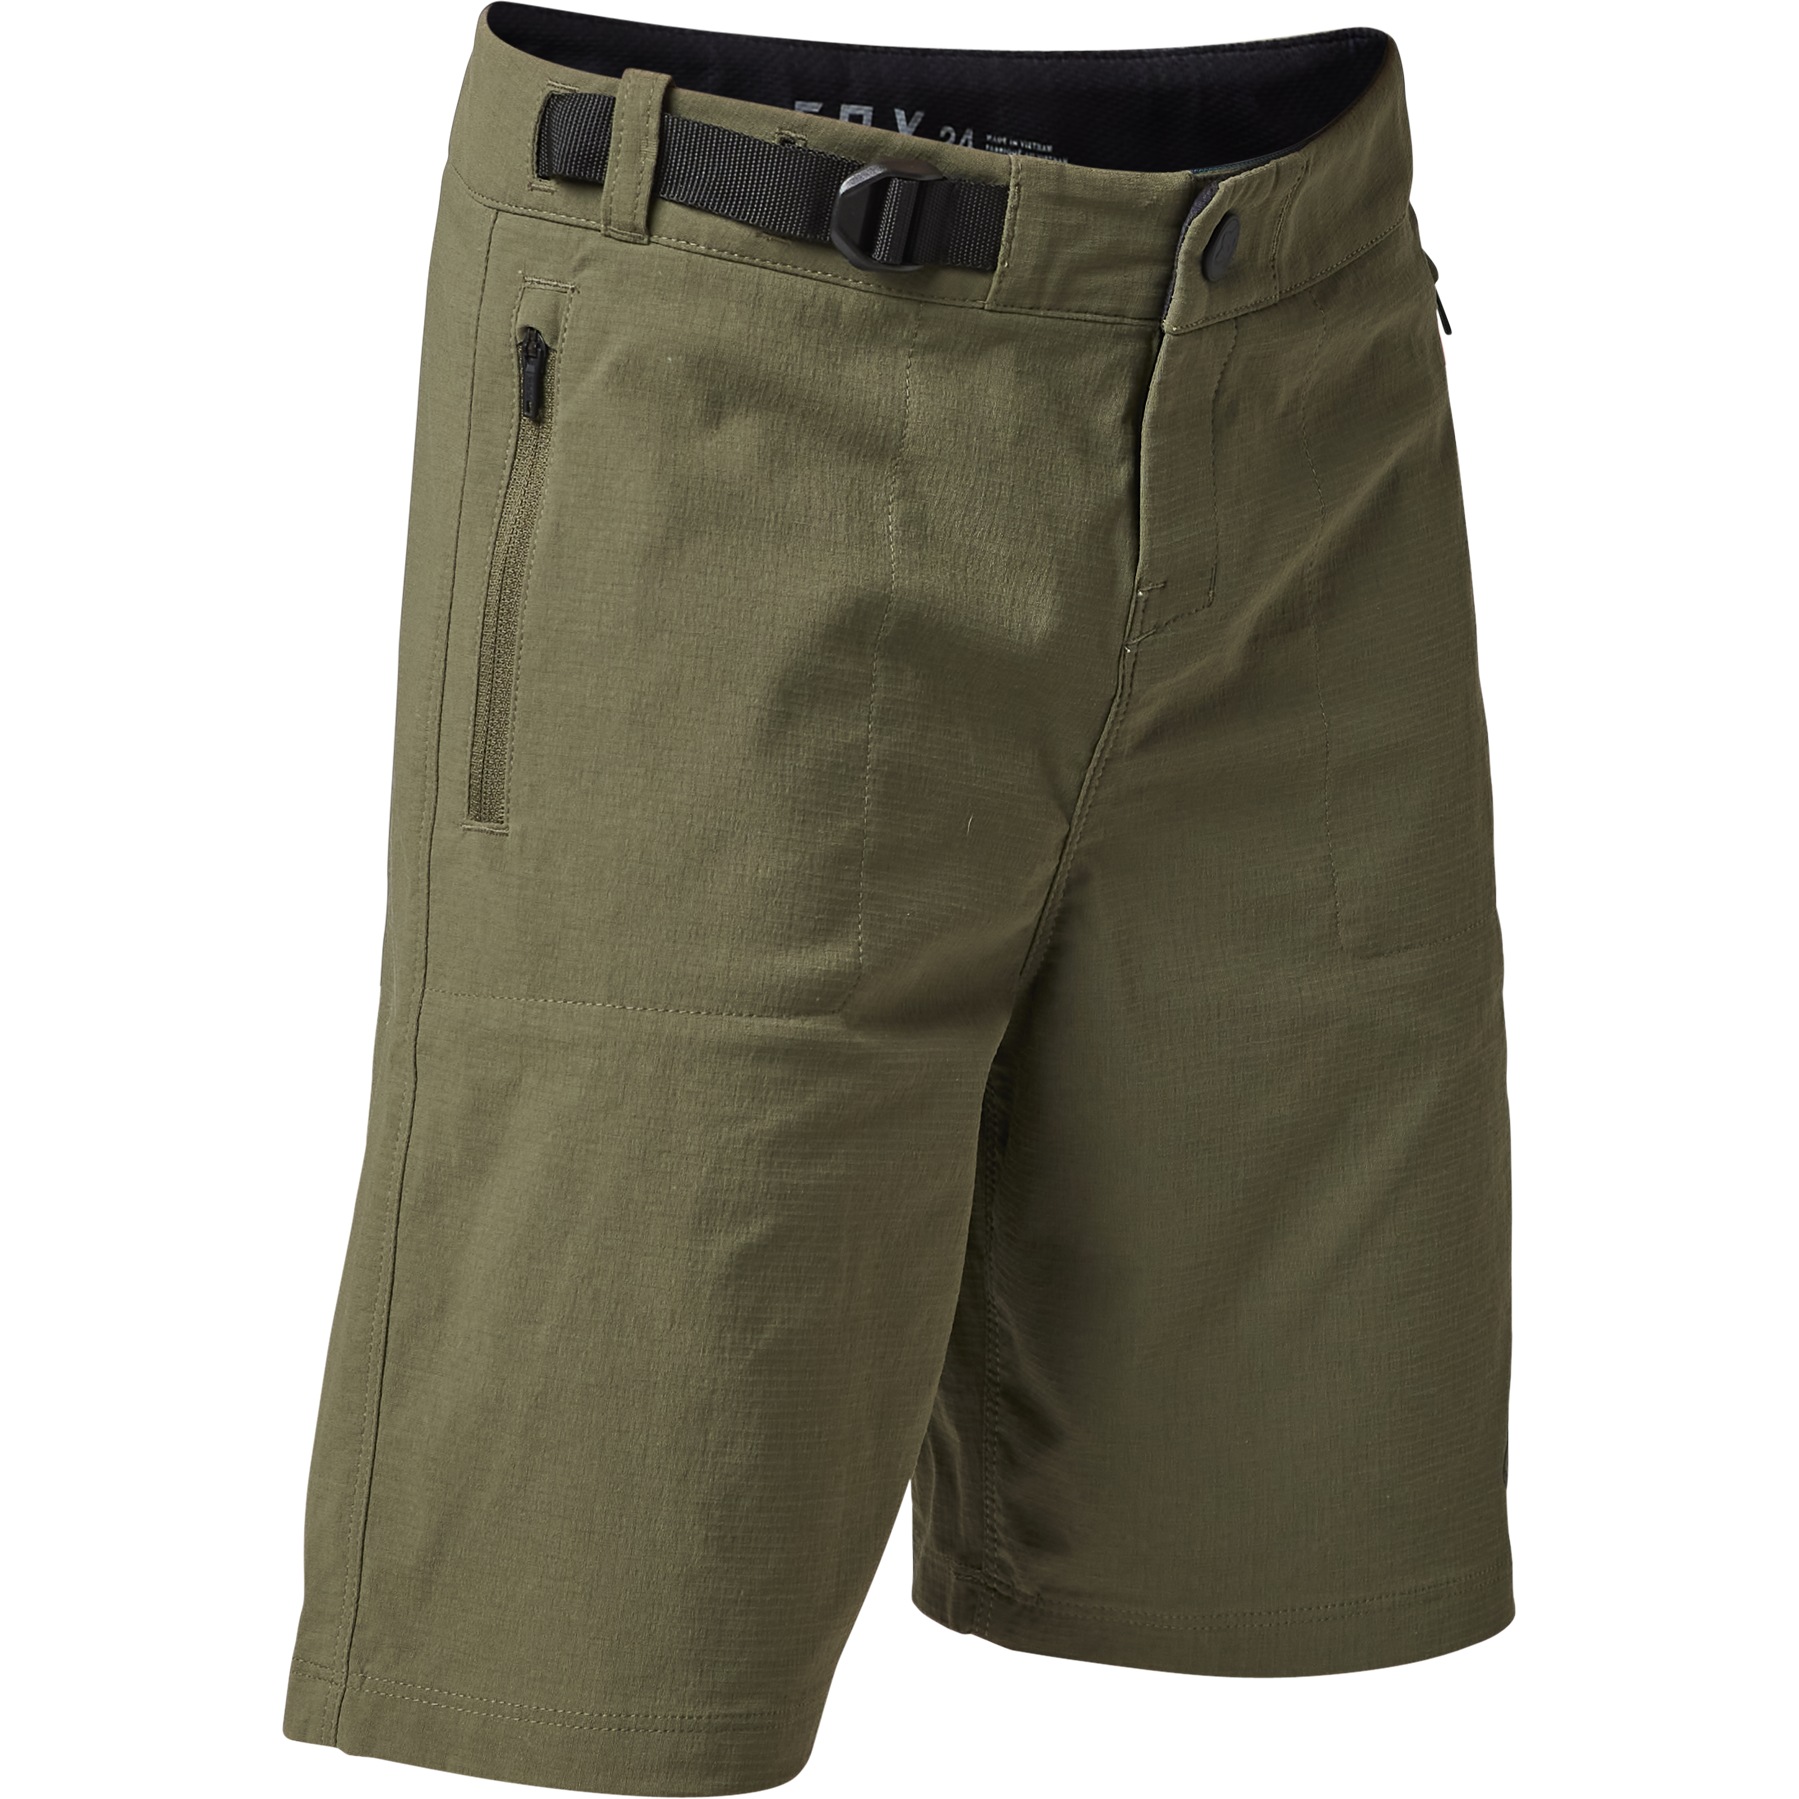 Produktbild von FOX Ranger MTB Kinder Shorts mit Innenhose - oliv grün